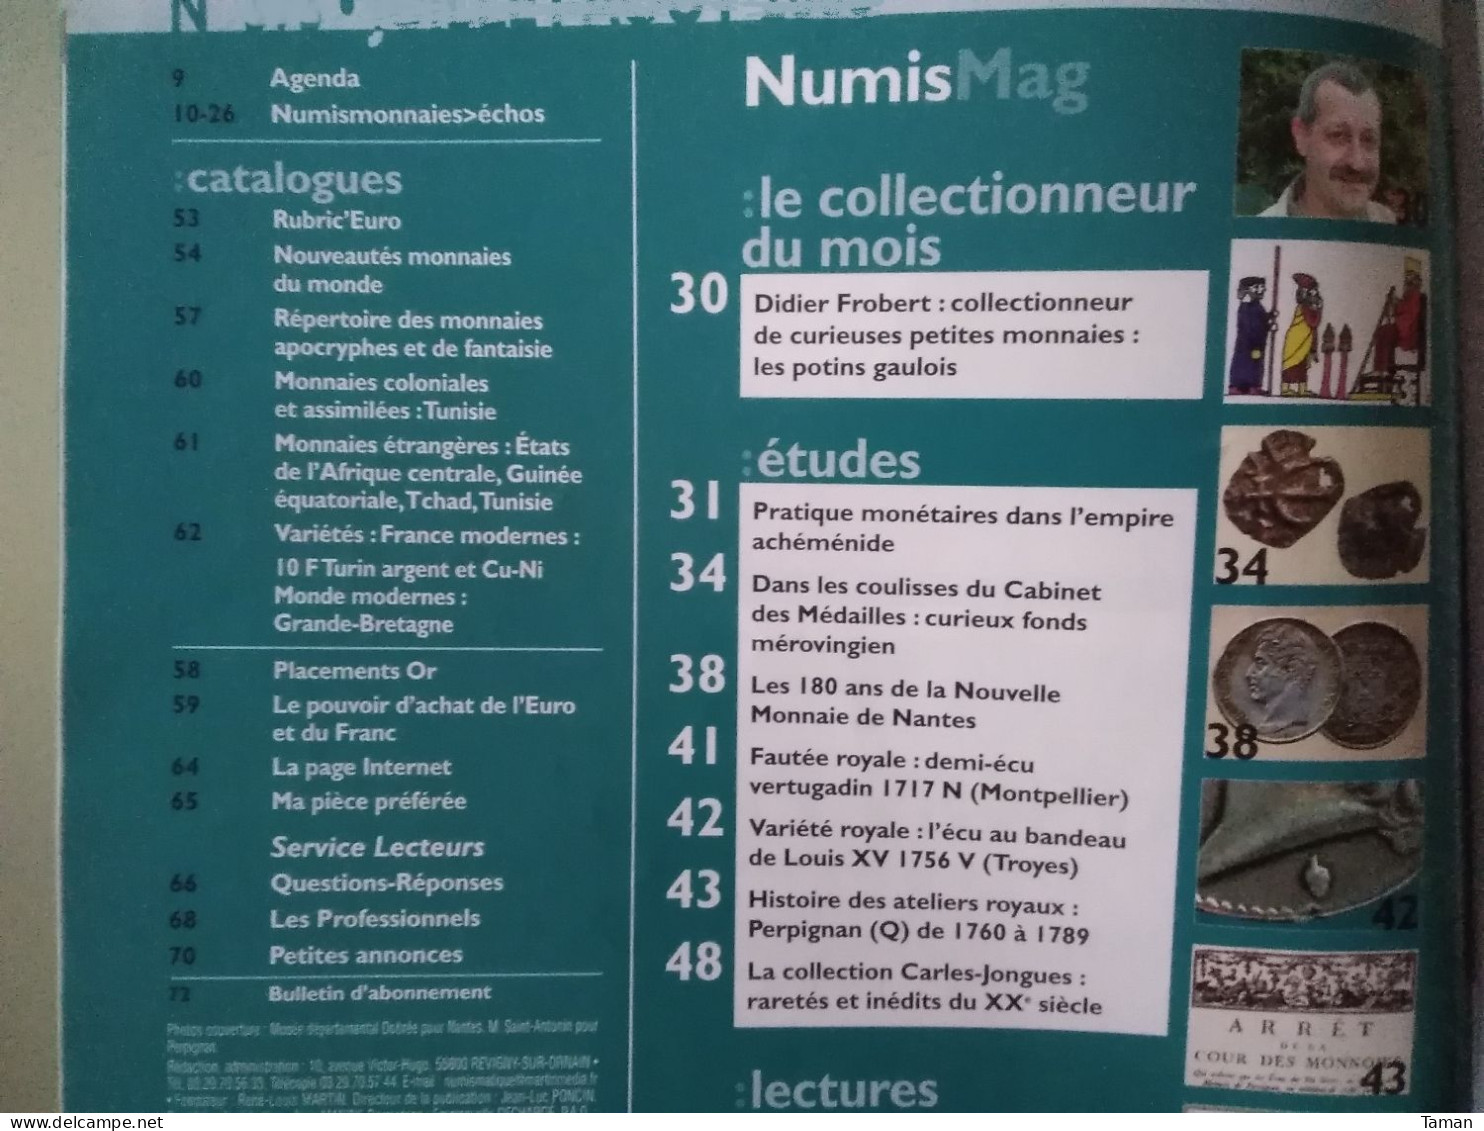 Numismatique & Change - Potins Gaulois - L'empire Achéménide - Mérovingien - Nantes - Perpignan Atelier Q - Frans